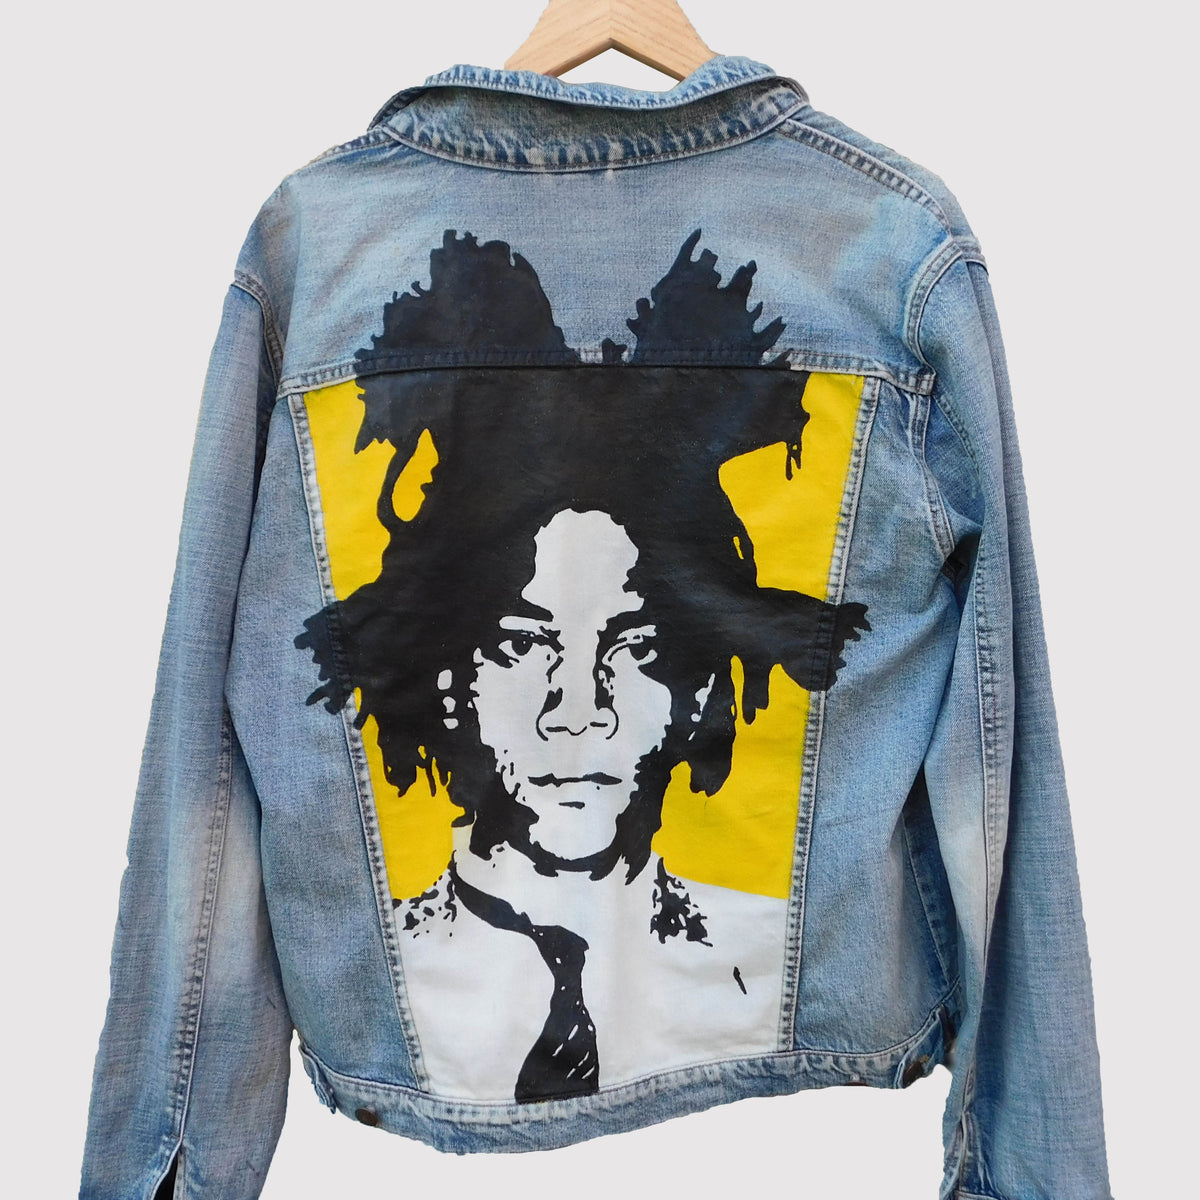 Basquiat Portrait Jacket – Tom Dale Art